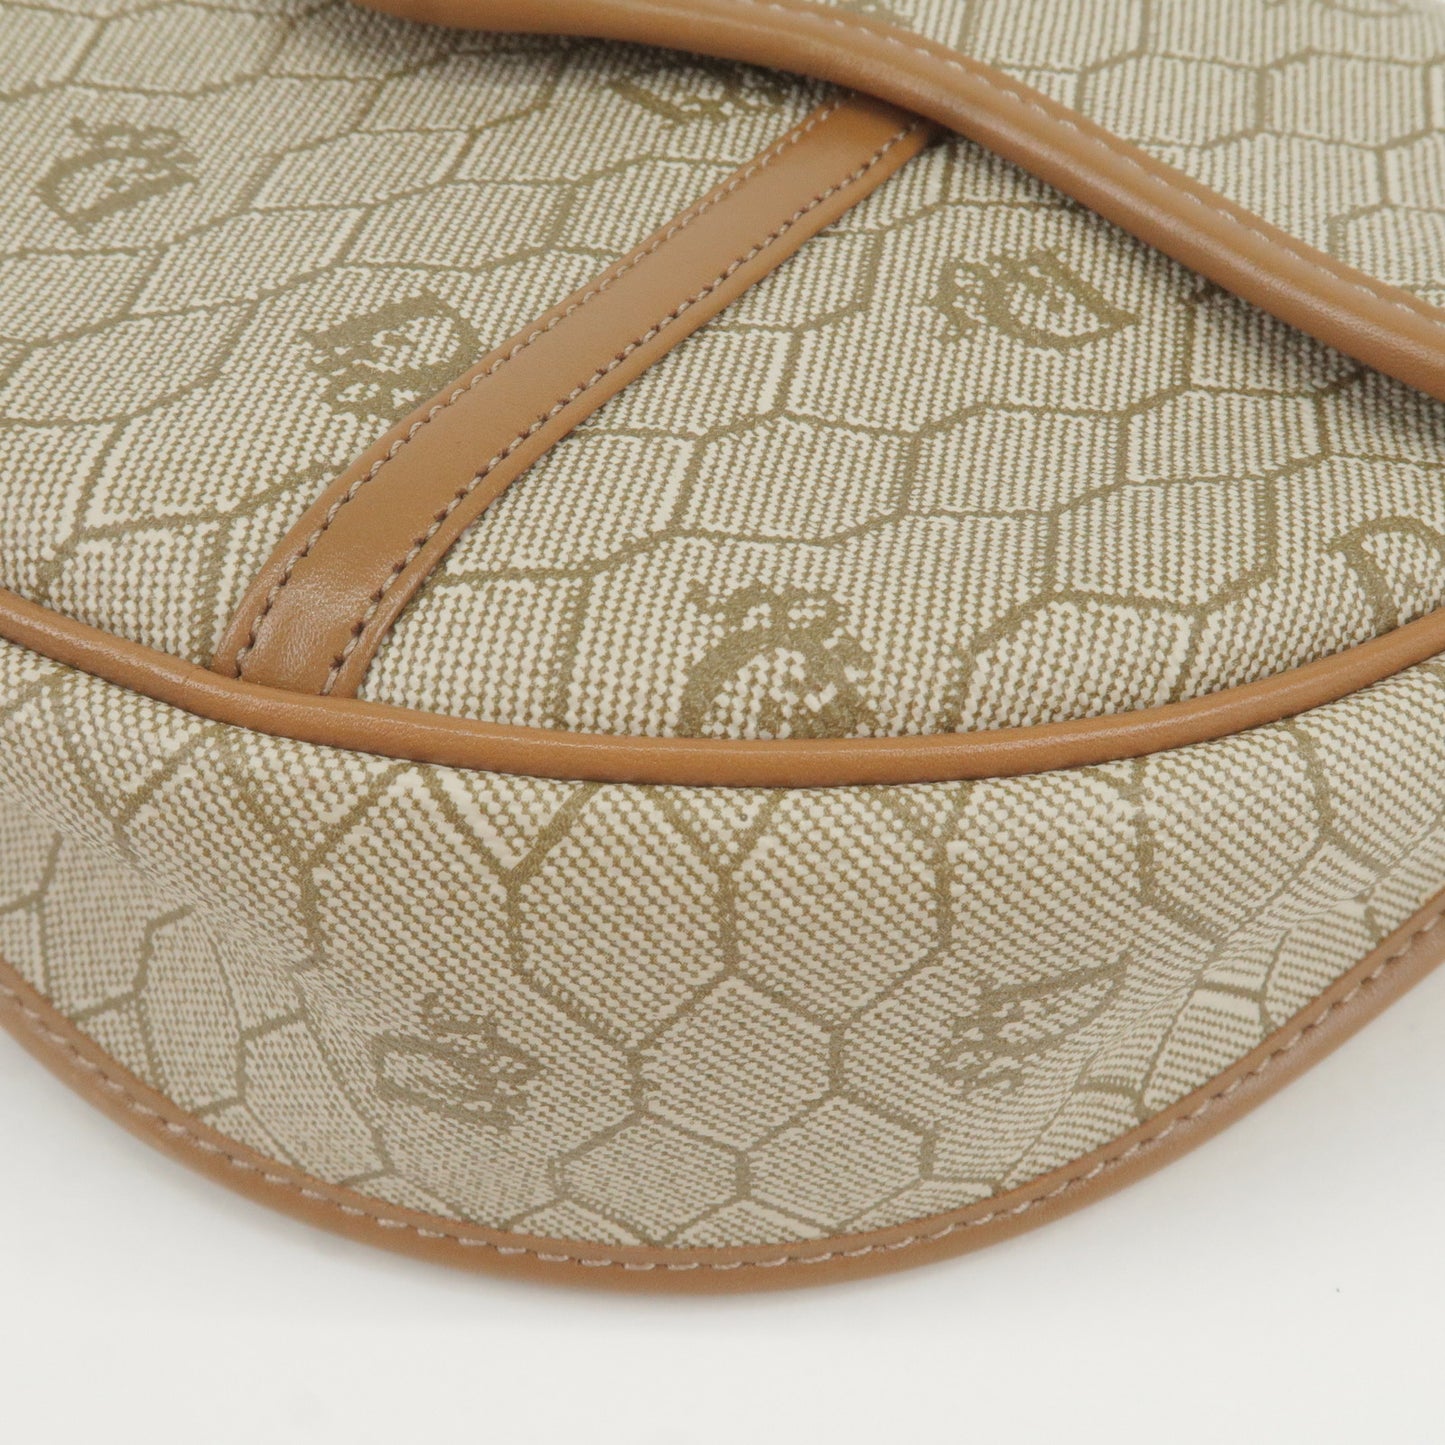 Christian Dior Honeycomb PVC Leather Shoulder Bag Beige Brown